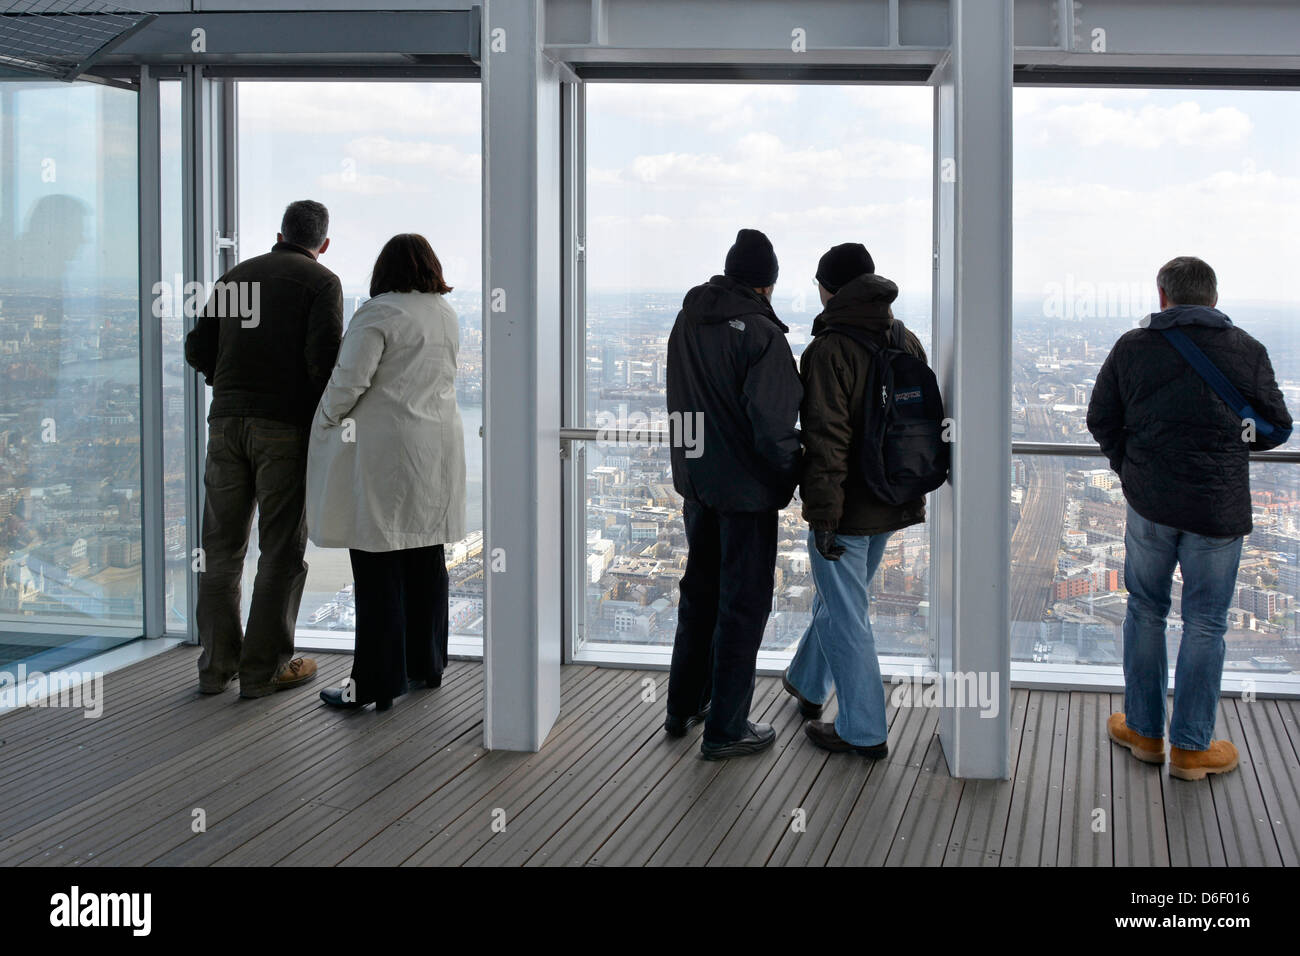 Haut dans le monument Shard gratte-ciel intérieur plate-forme d'observation publique vue arrière les gens admirent le paysage londonien Southwark Londres Angleterre Royaume-Uni Banque D'Images